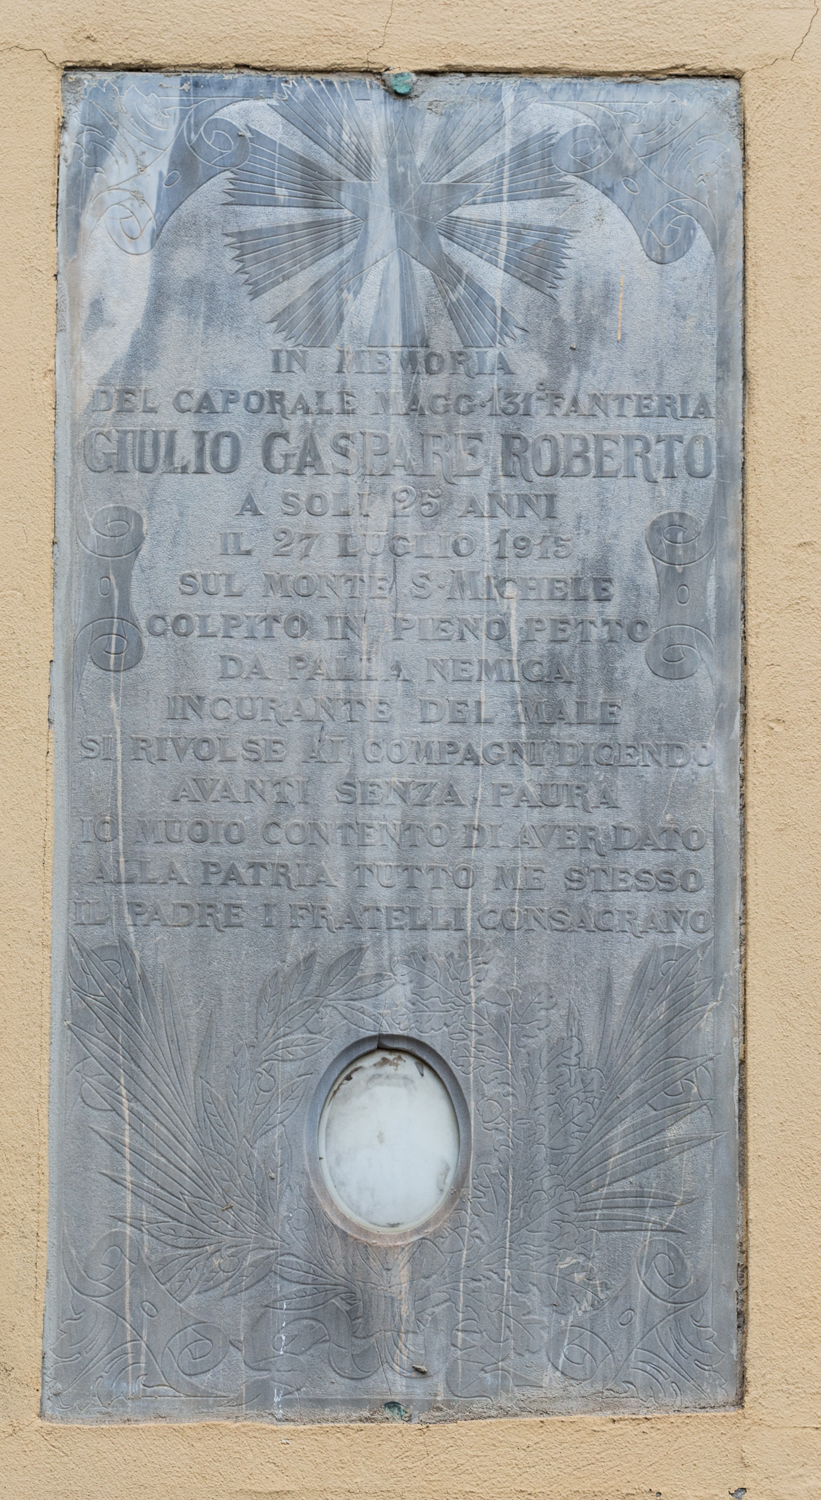 Giulio gaspare roberto, soggetto assente (monumento ai caduti - a lapide)